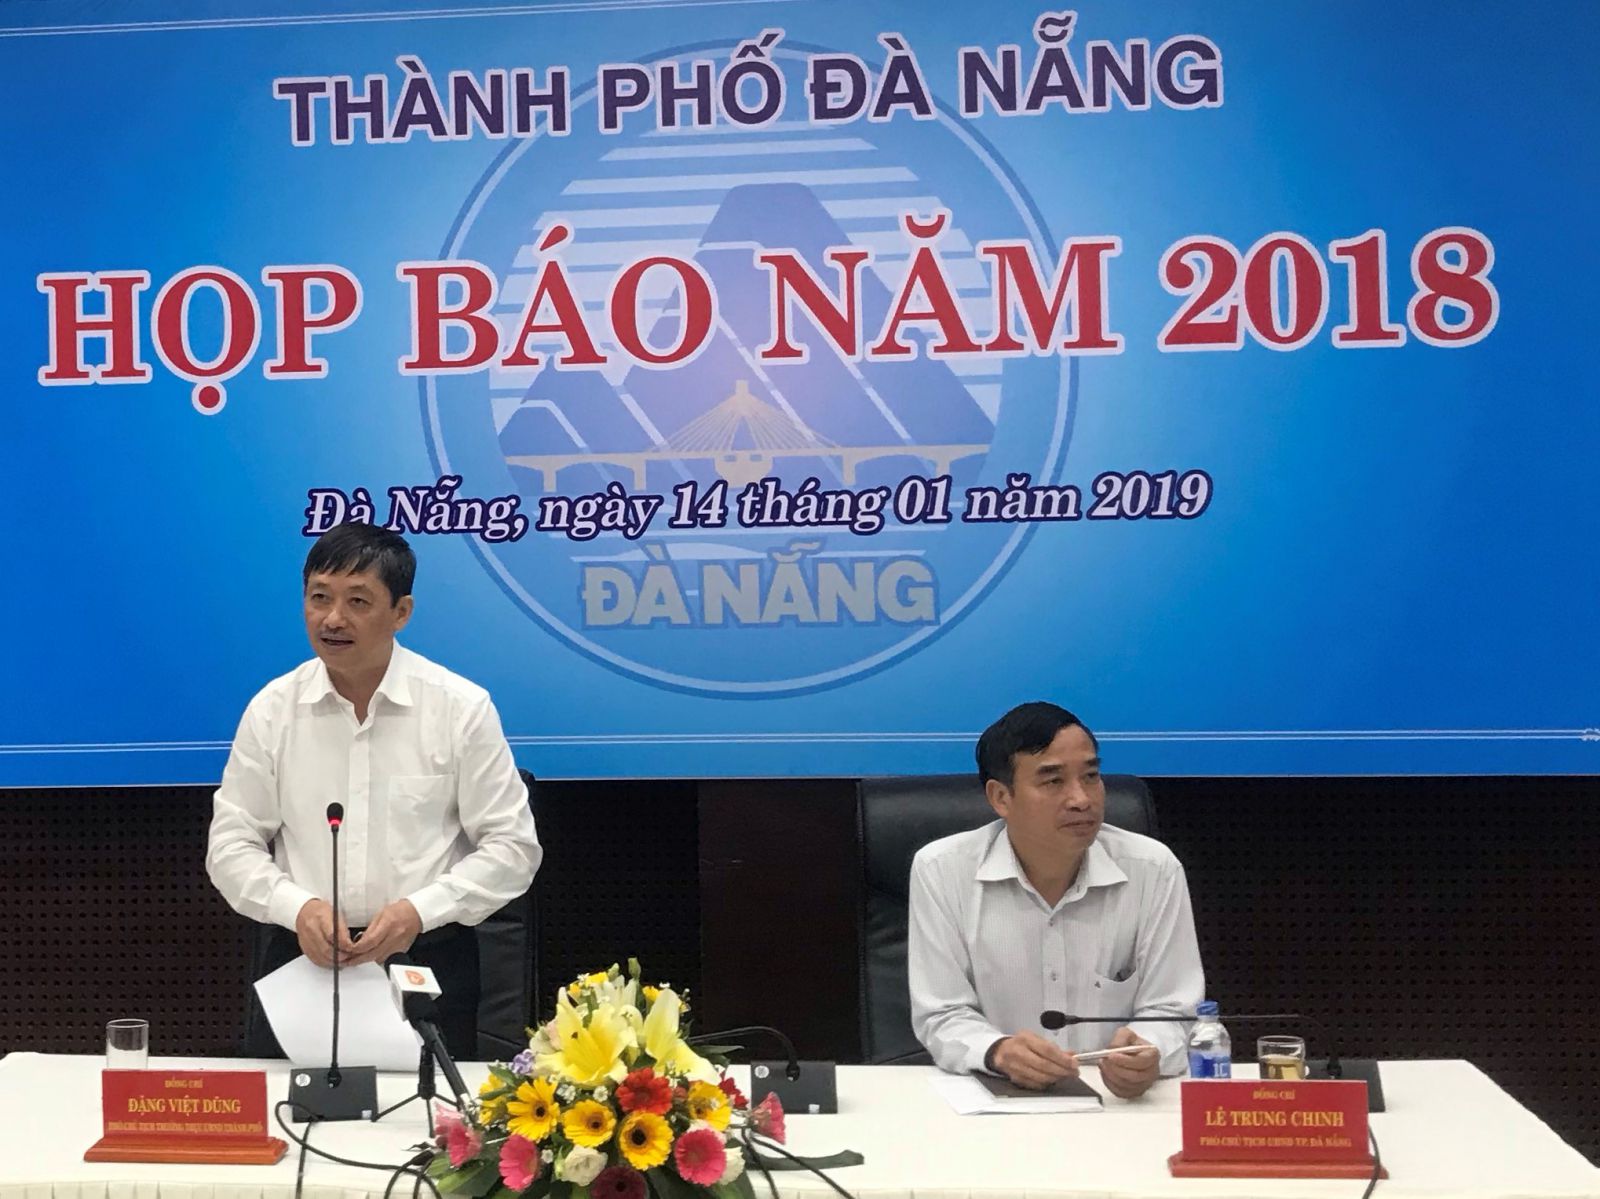 Đà Nẵng vừa tổ chức họp báo quý IV năm 2018 với sự tham dự của Phó Chủ tịch Thường trực UBND Đặng Việt Dũng và Phó Chủ tịch Nguyễn